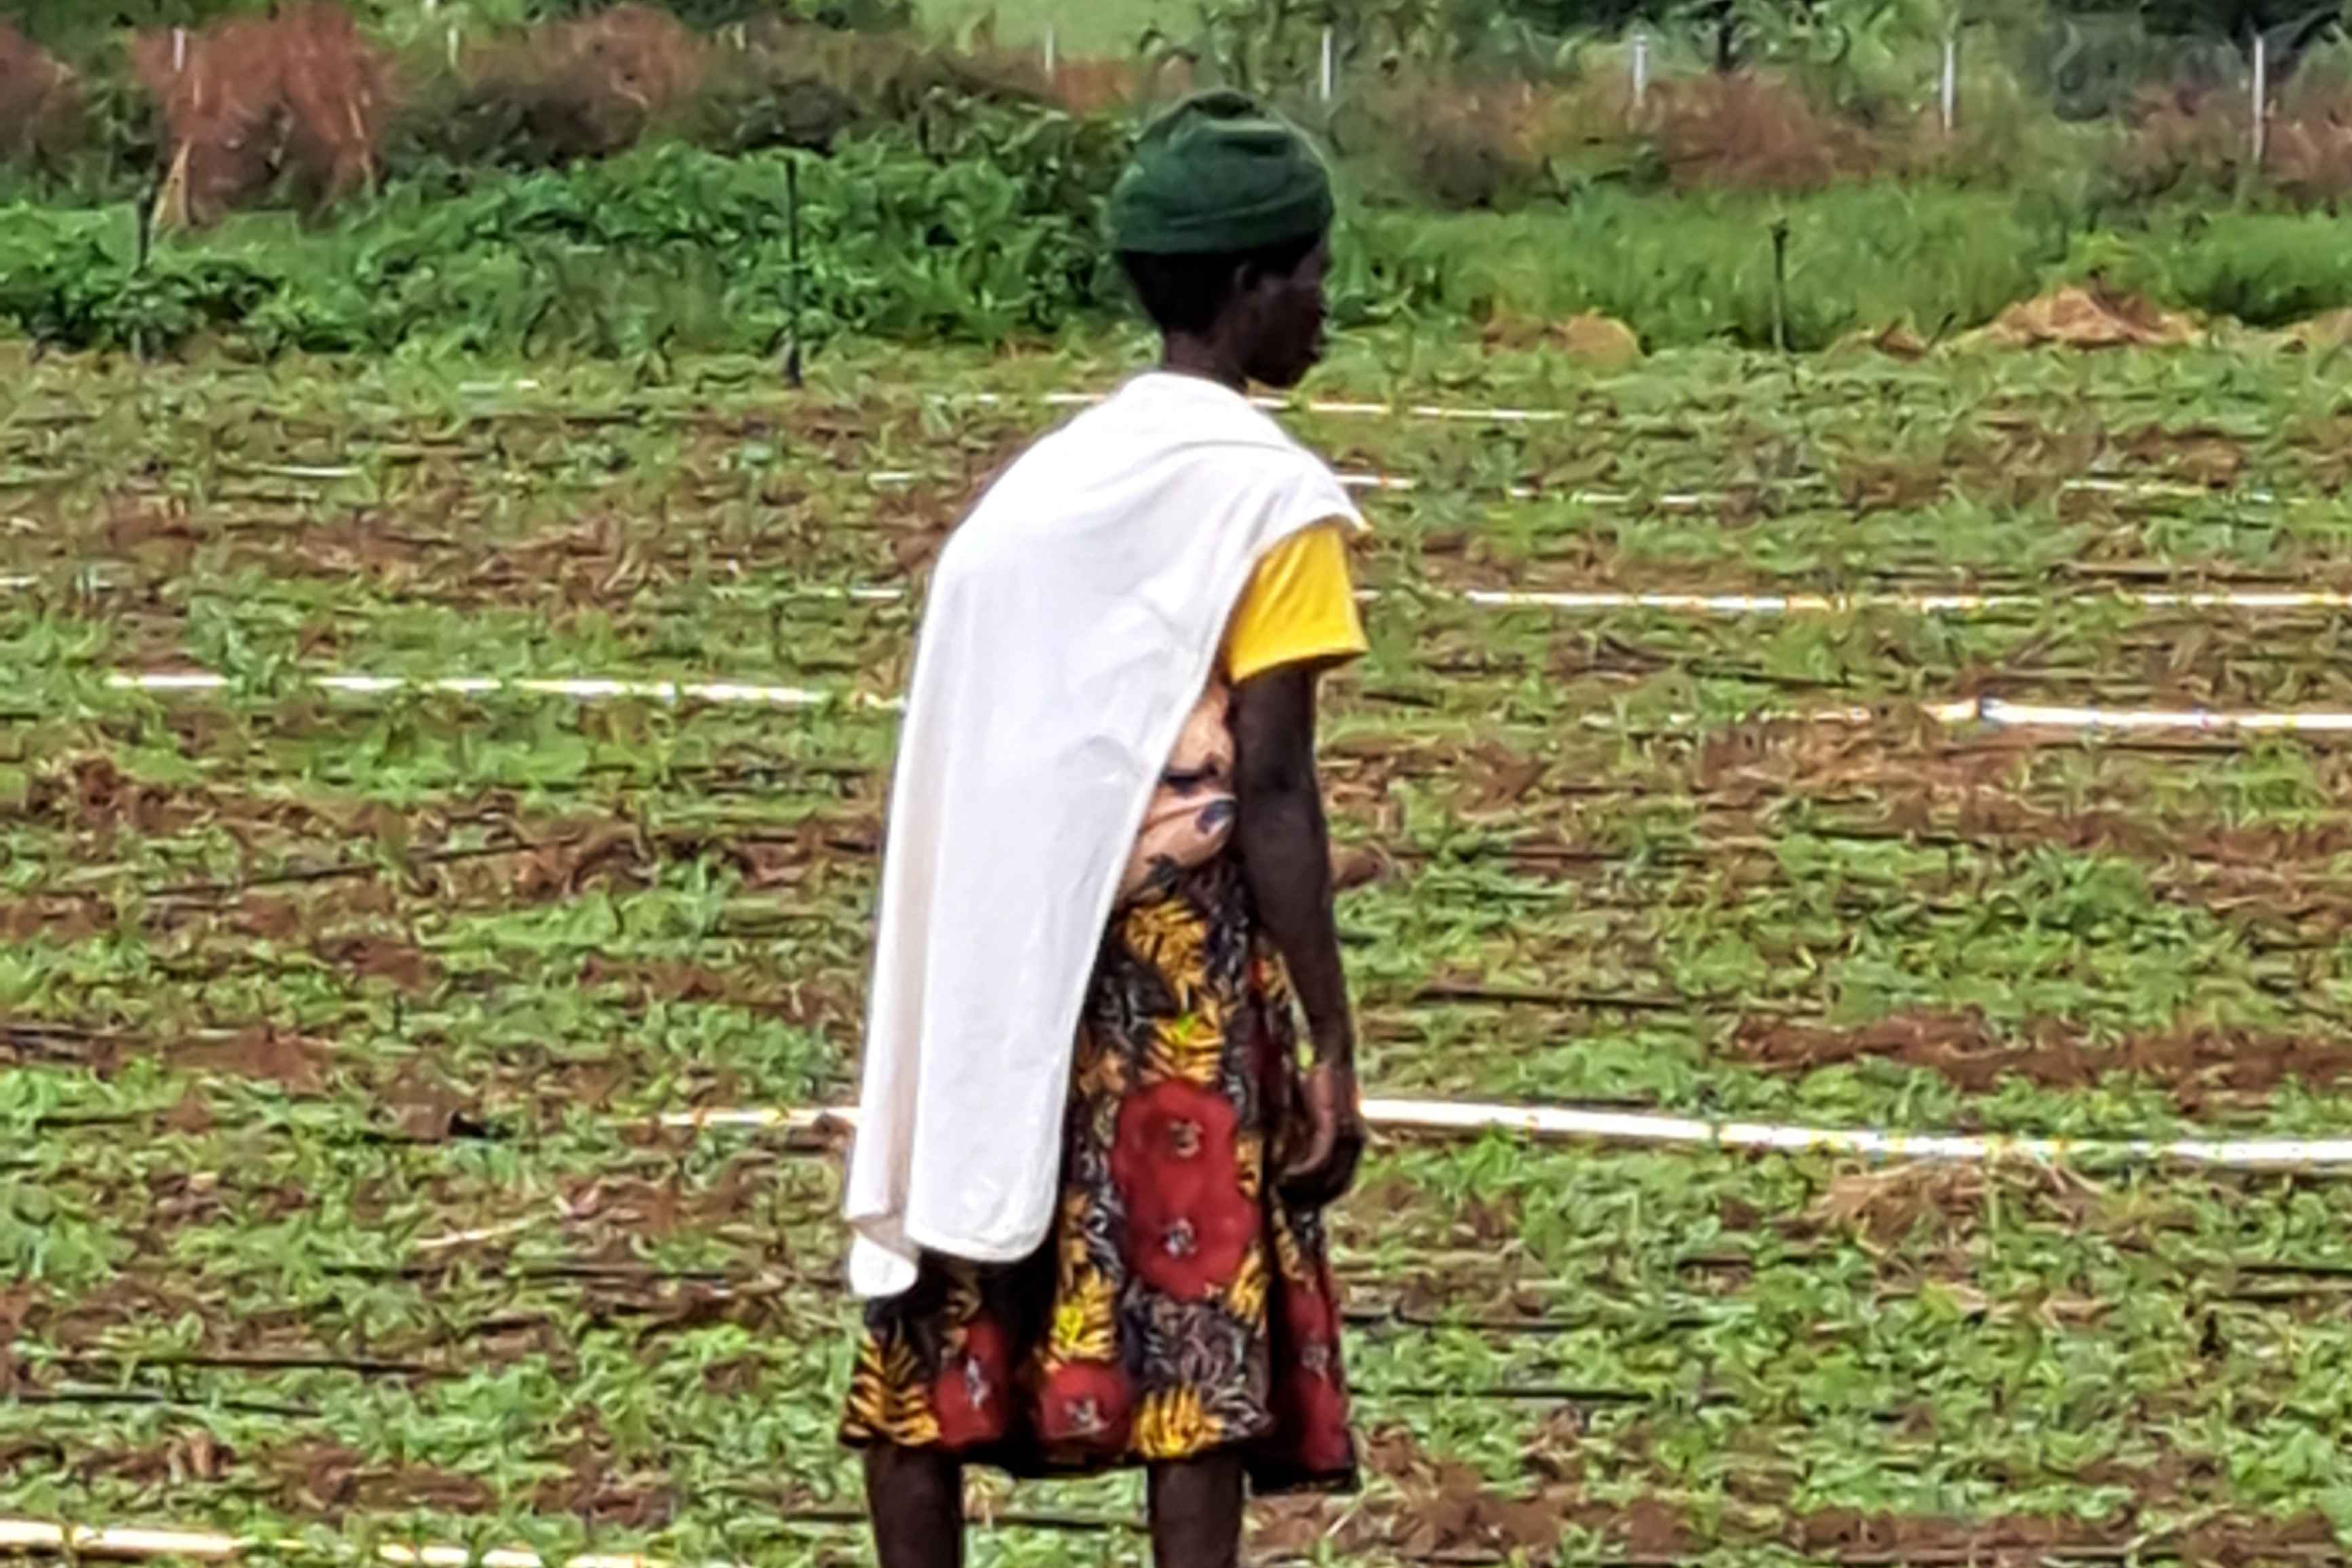 RWANDA: MODULAR FARMING FACILITY WITH PRECISION IRRIGATION